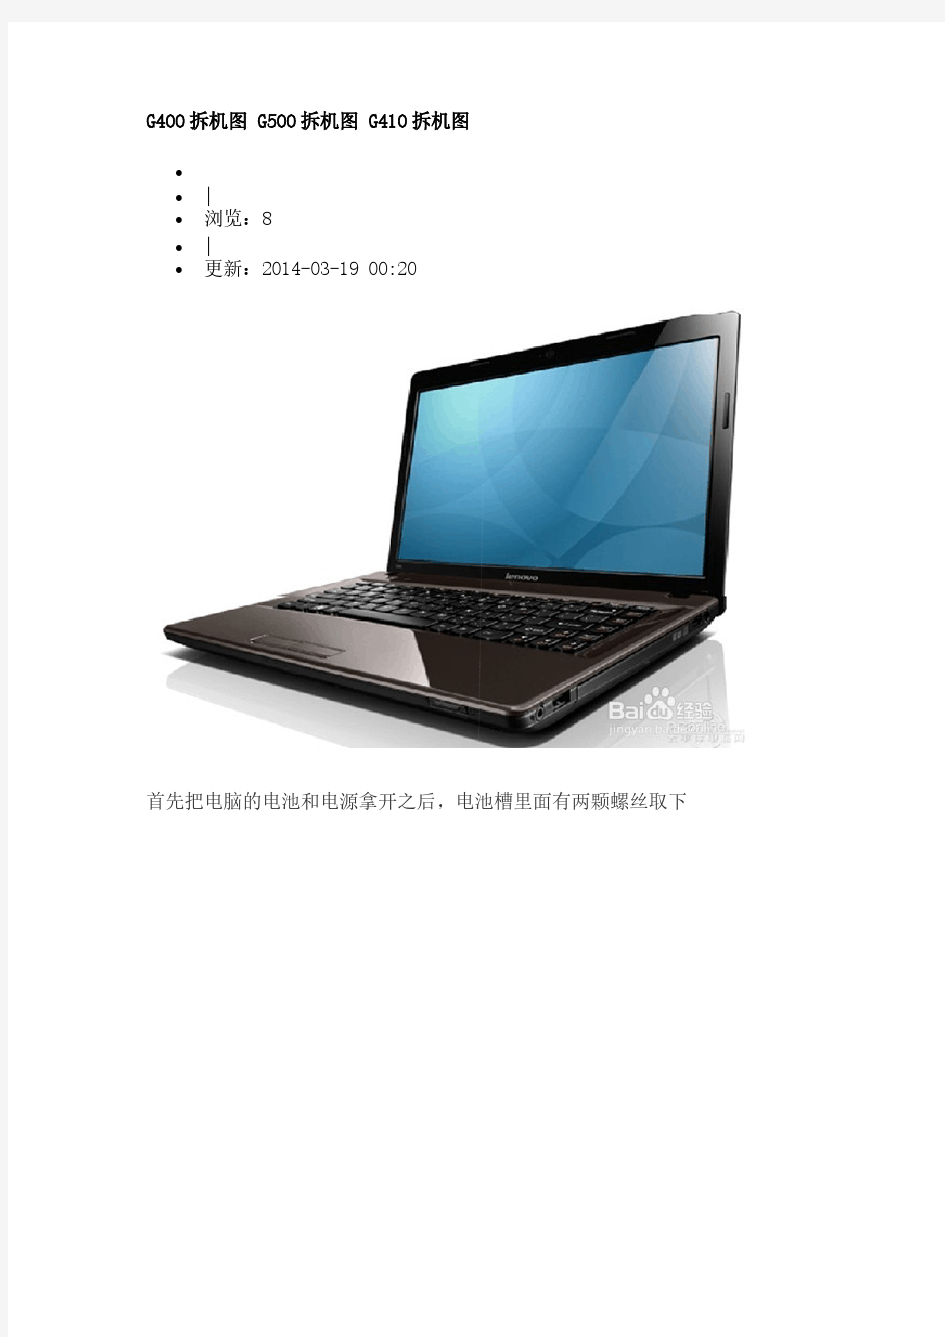 联想笔记本电脑G410拆机教程-推荐下载